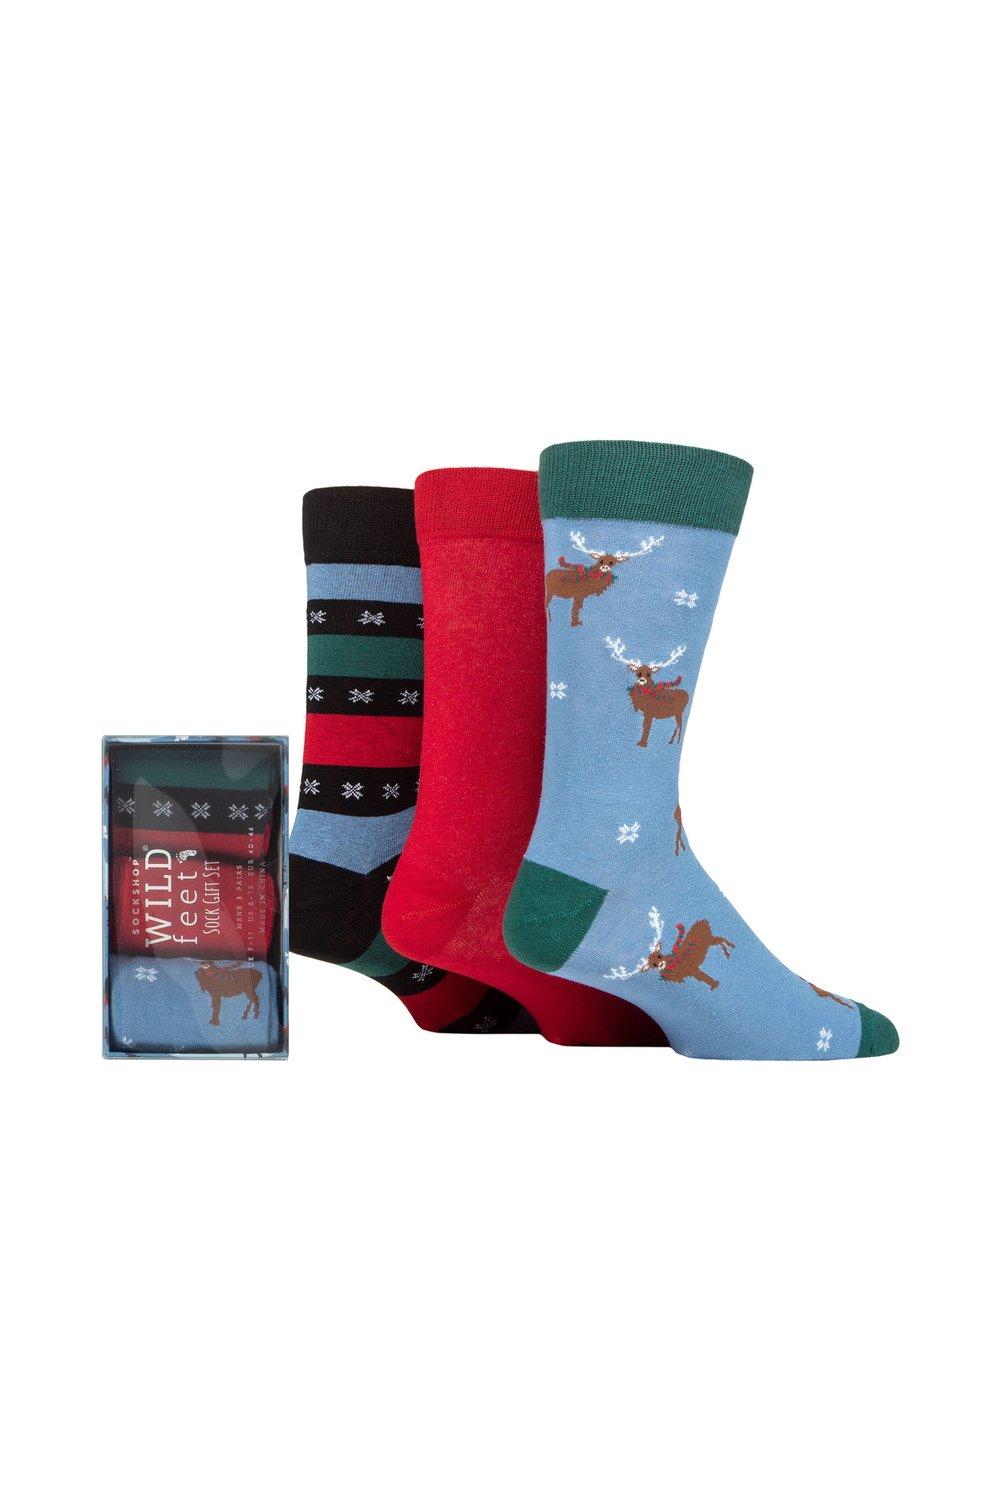 3 пары носков в подарочной упаковке winter wonderland christmas cube sockshop wild feet мультиколор 3 пары рождественских подарочных носков Winter Wonderland в упаковке SOCKSHOP Wild Feet, мультиколор